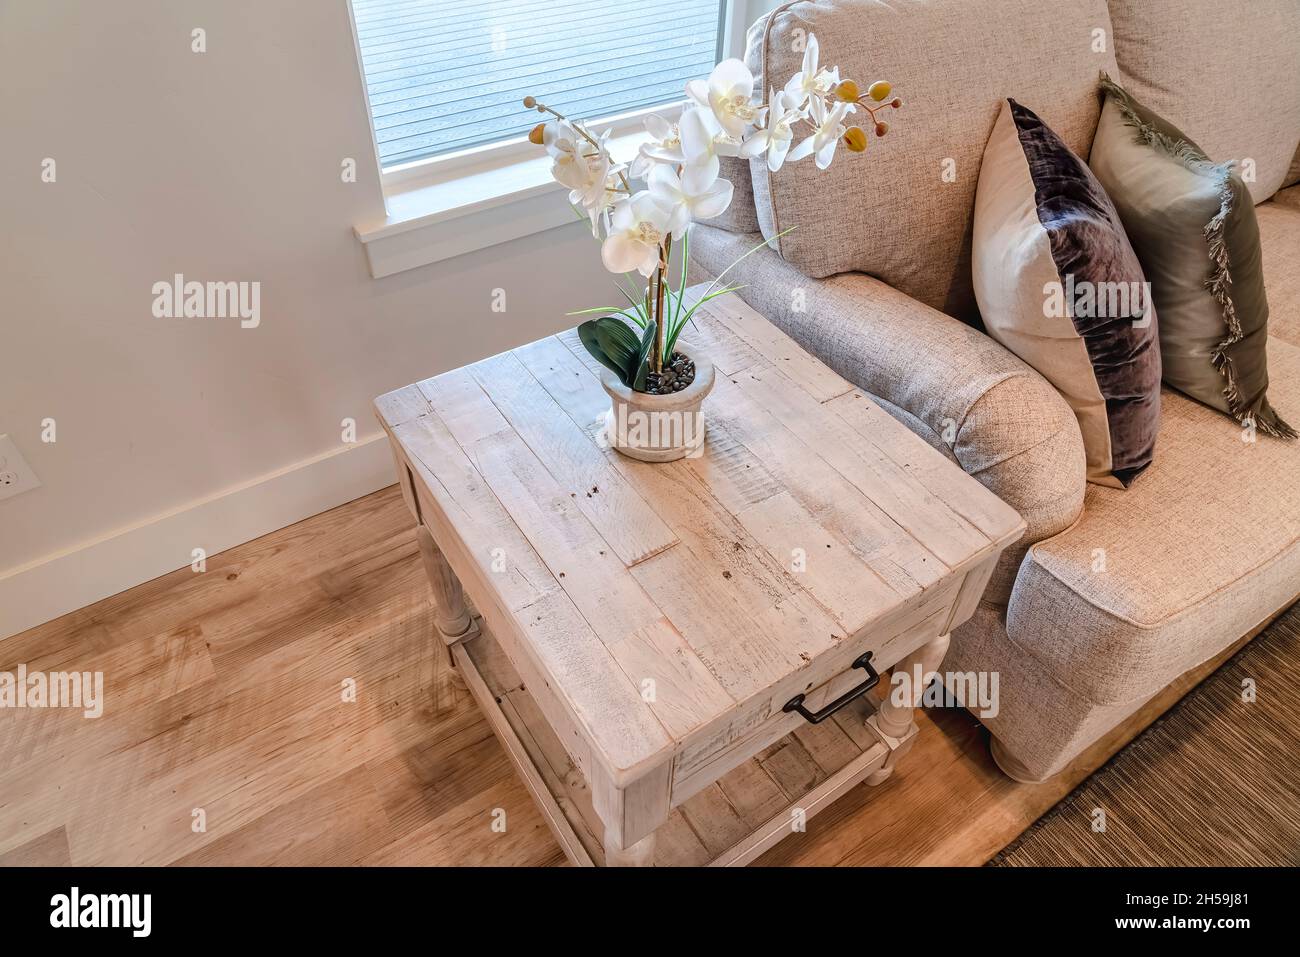 Beistelltisch mit Blume neben dem Sofa am Holzfußboden und Teppich des  Wohnzimmers Stockfotografie - Alamy